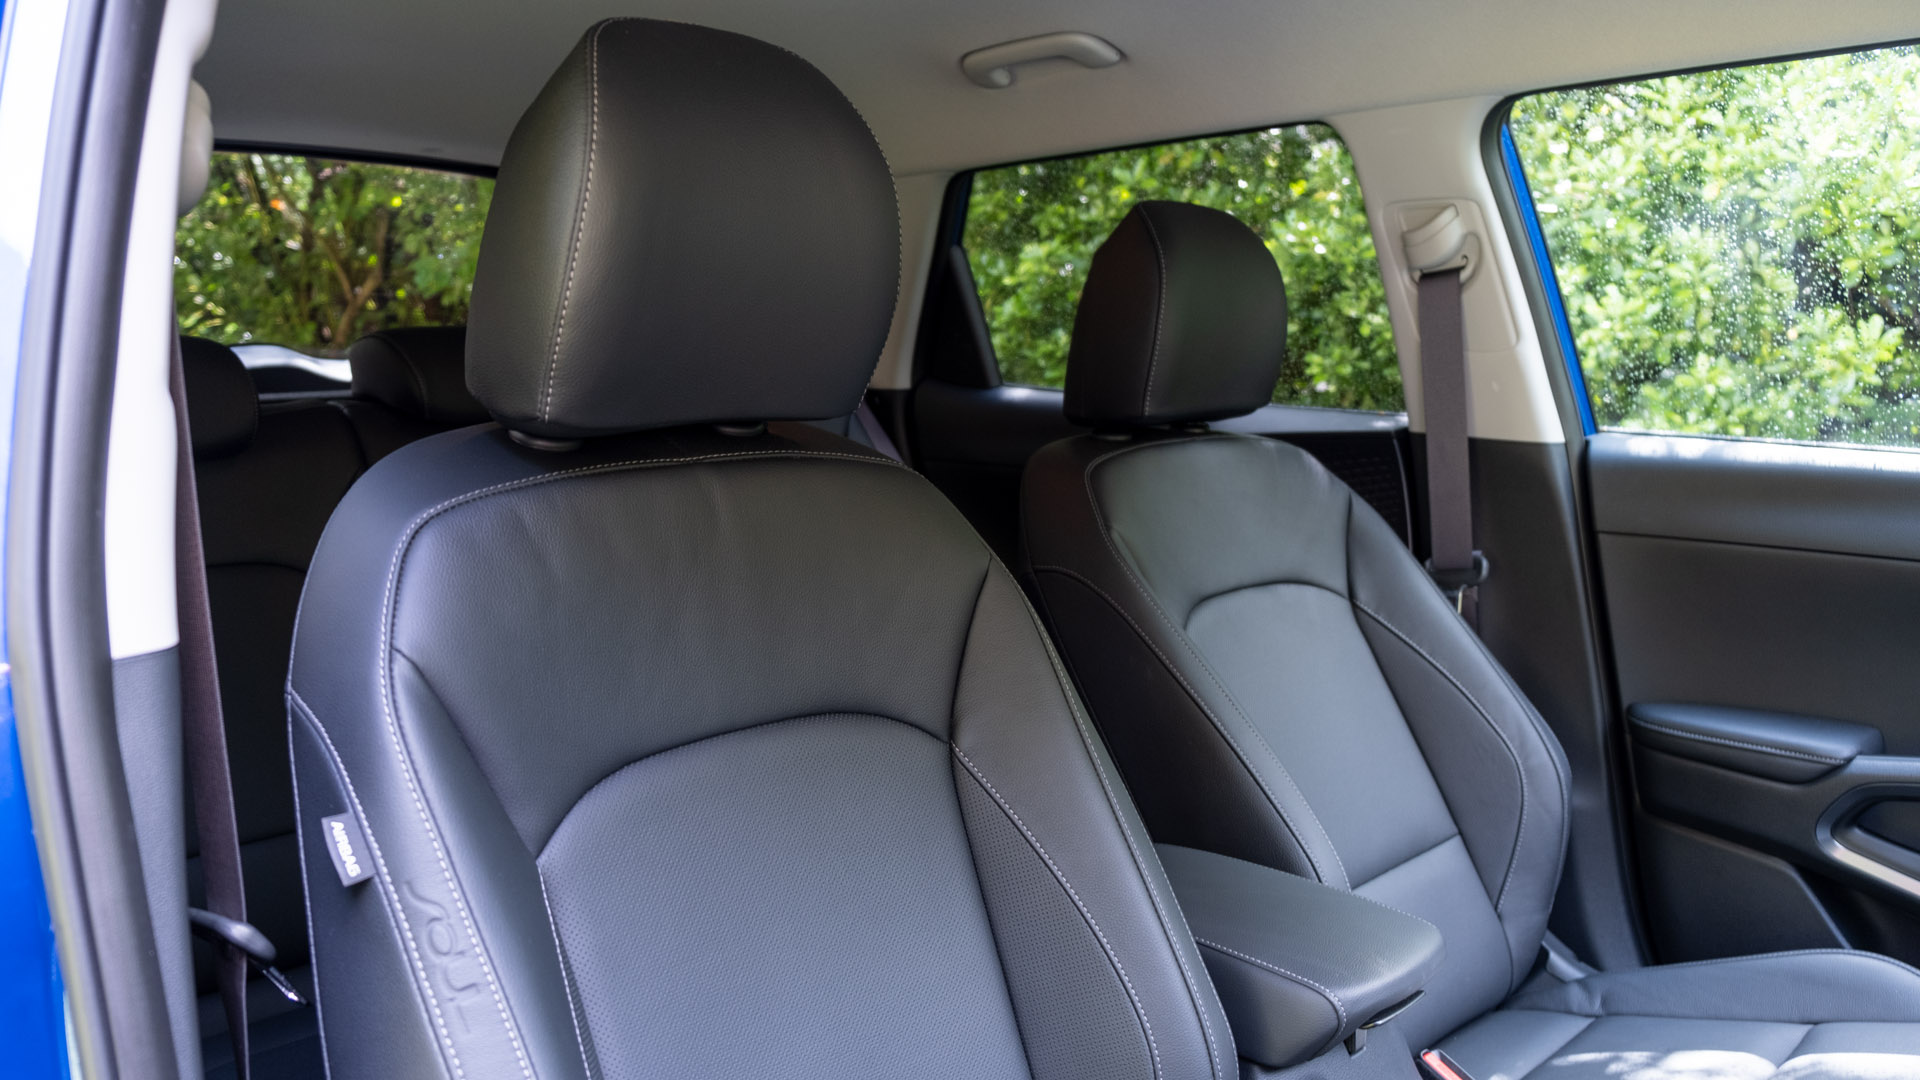 Kia Soul EV front seat comfort